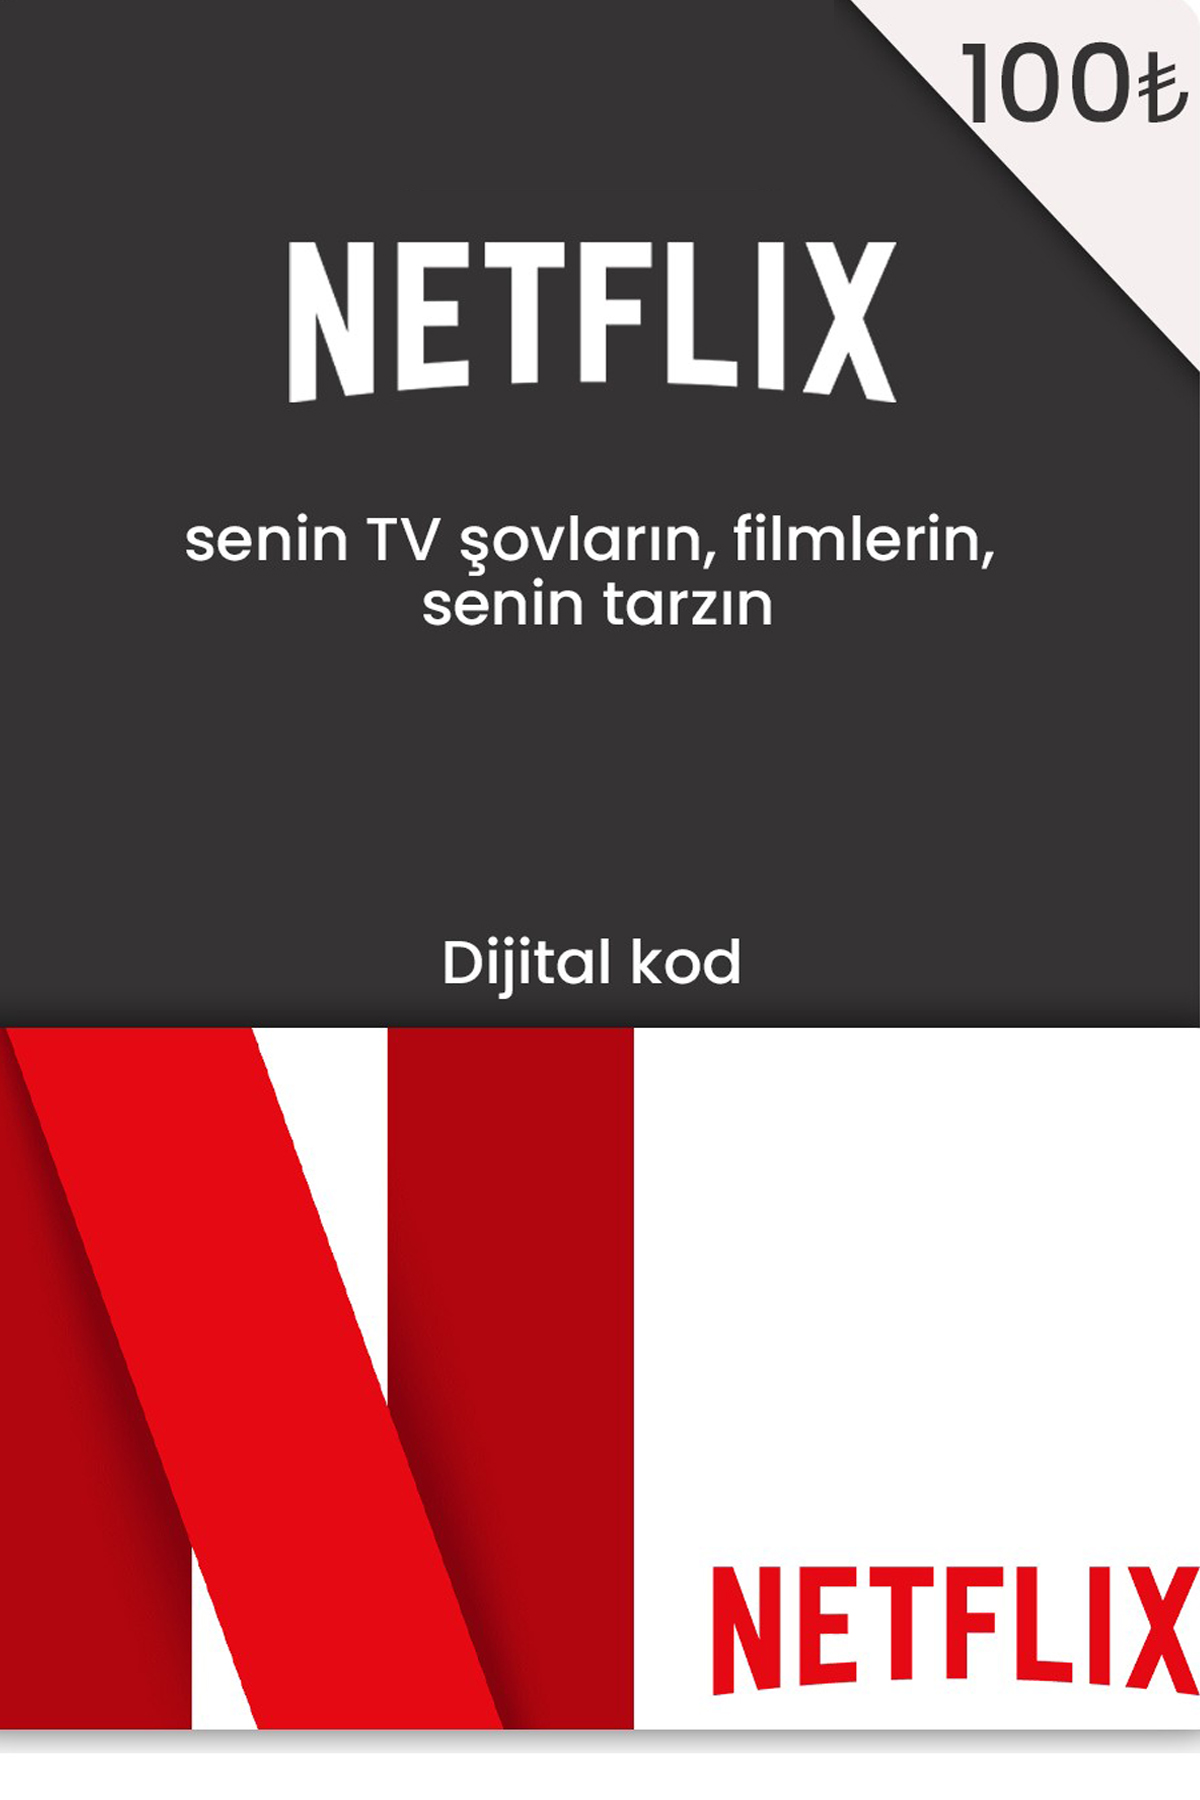 Netflix 100 Tl Hediye Kart